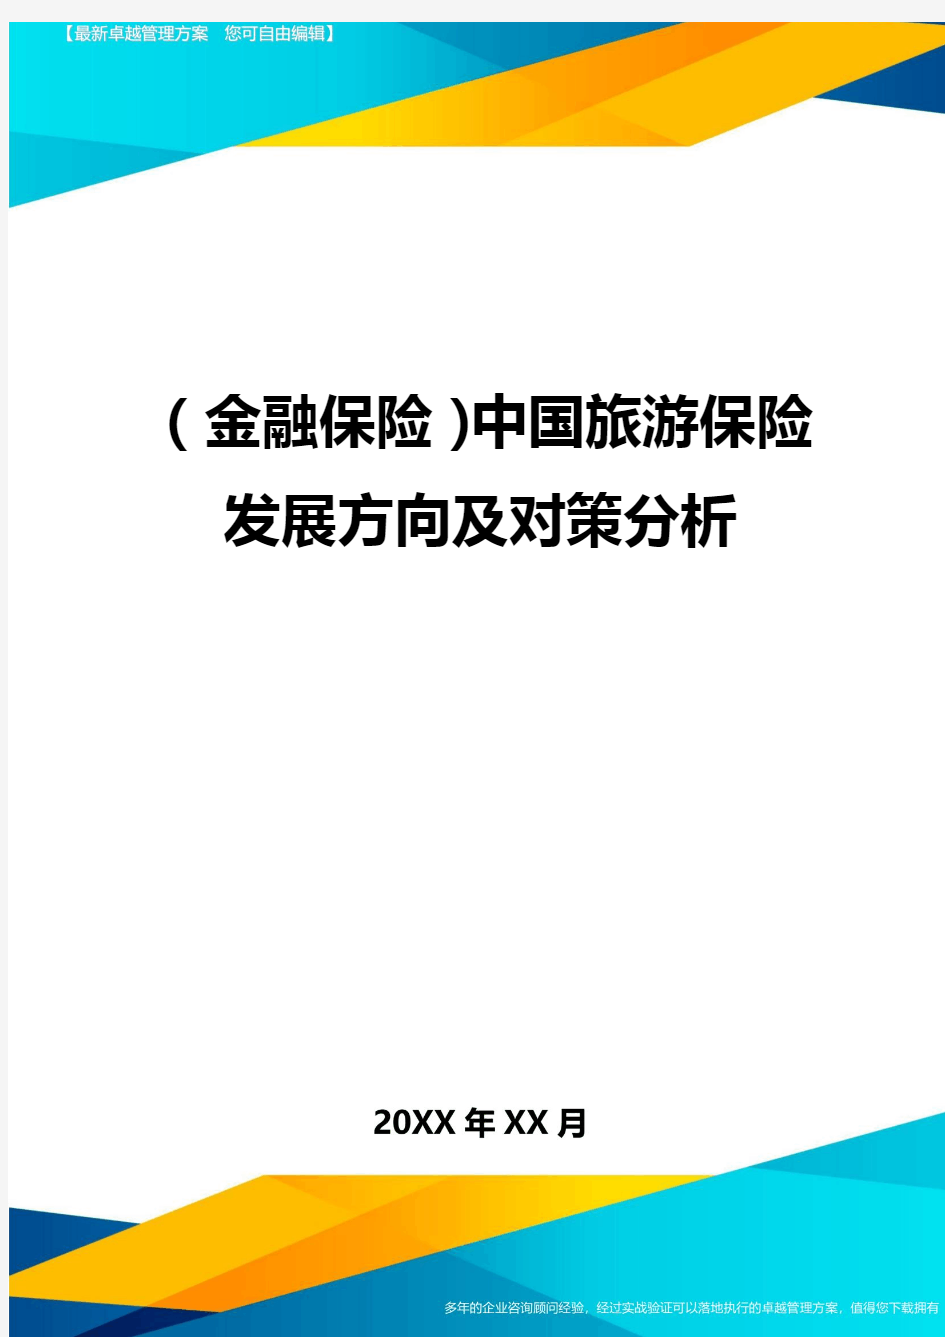 2020年(金融保险)中国旅游保险发展方向及对策分析